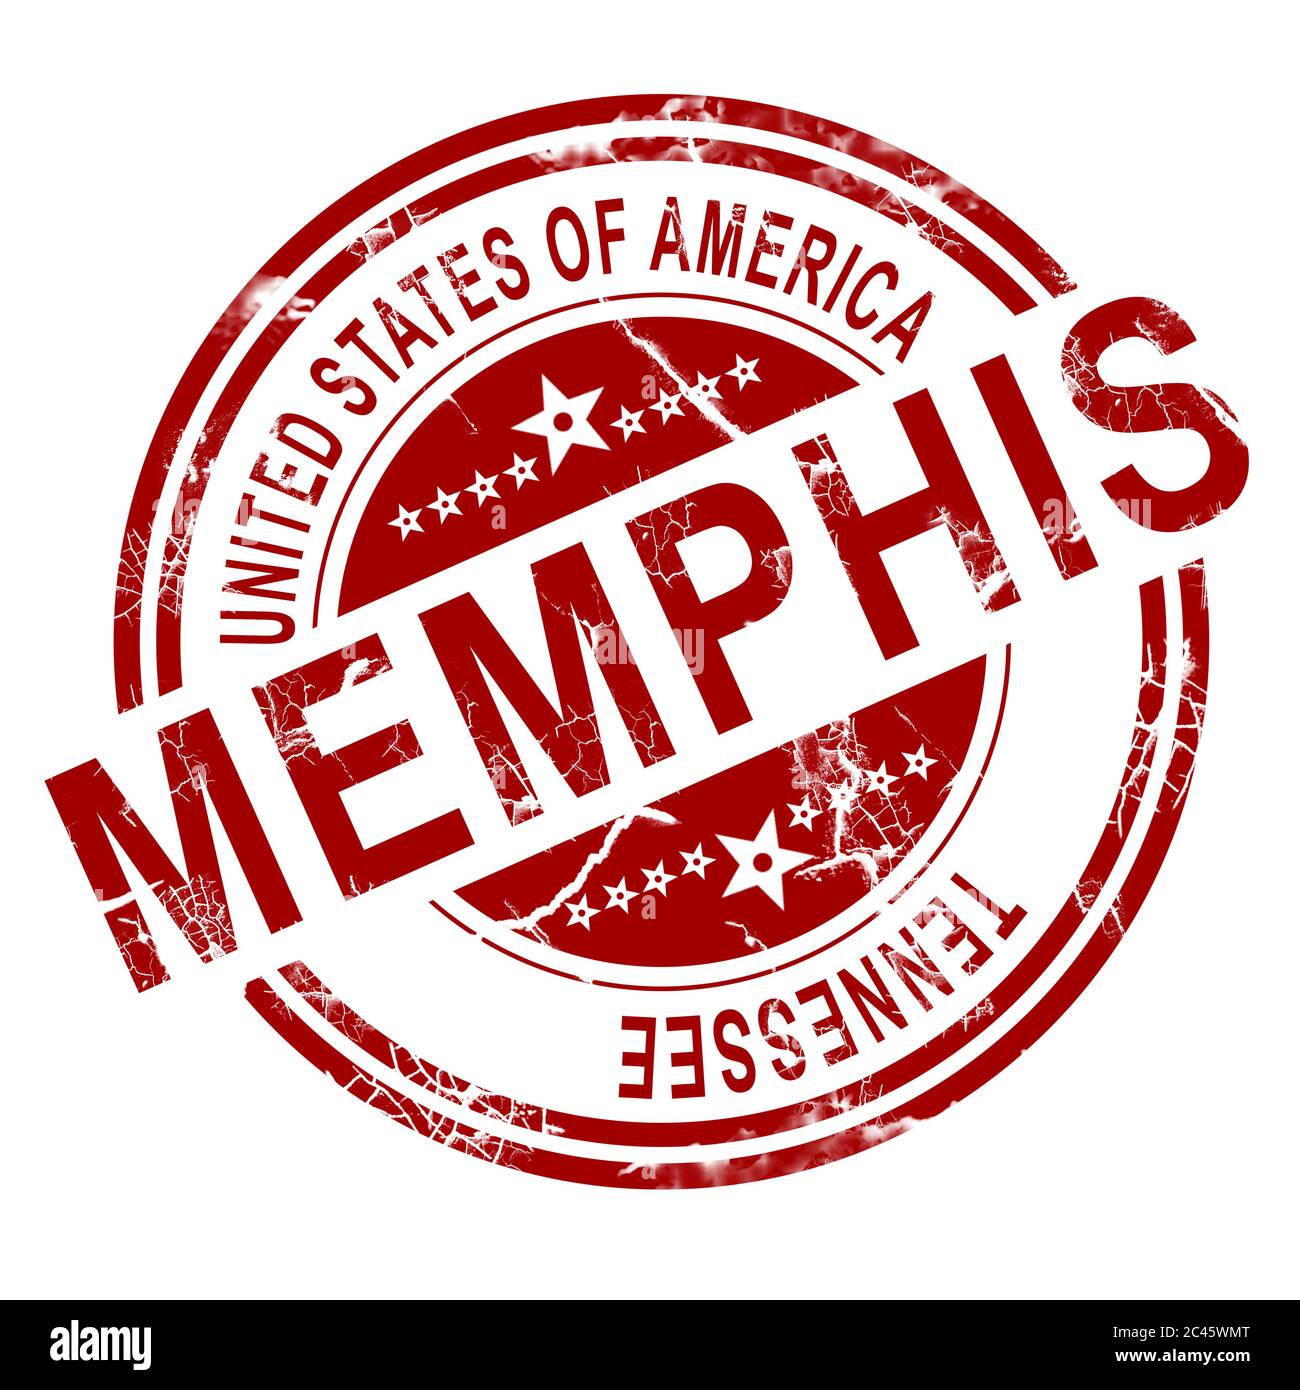 Memphis rouge sur fond blanc, 3D Rendering Banque D'Images